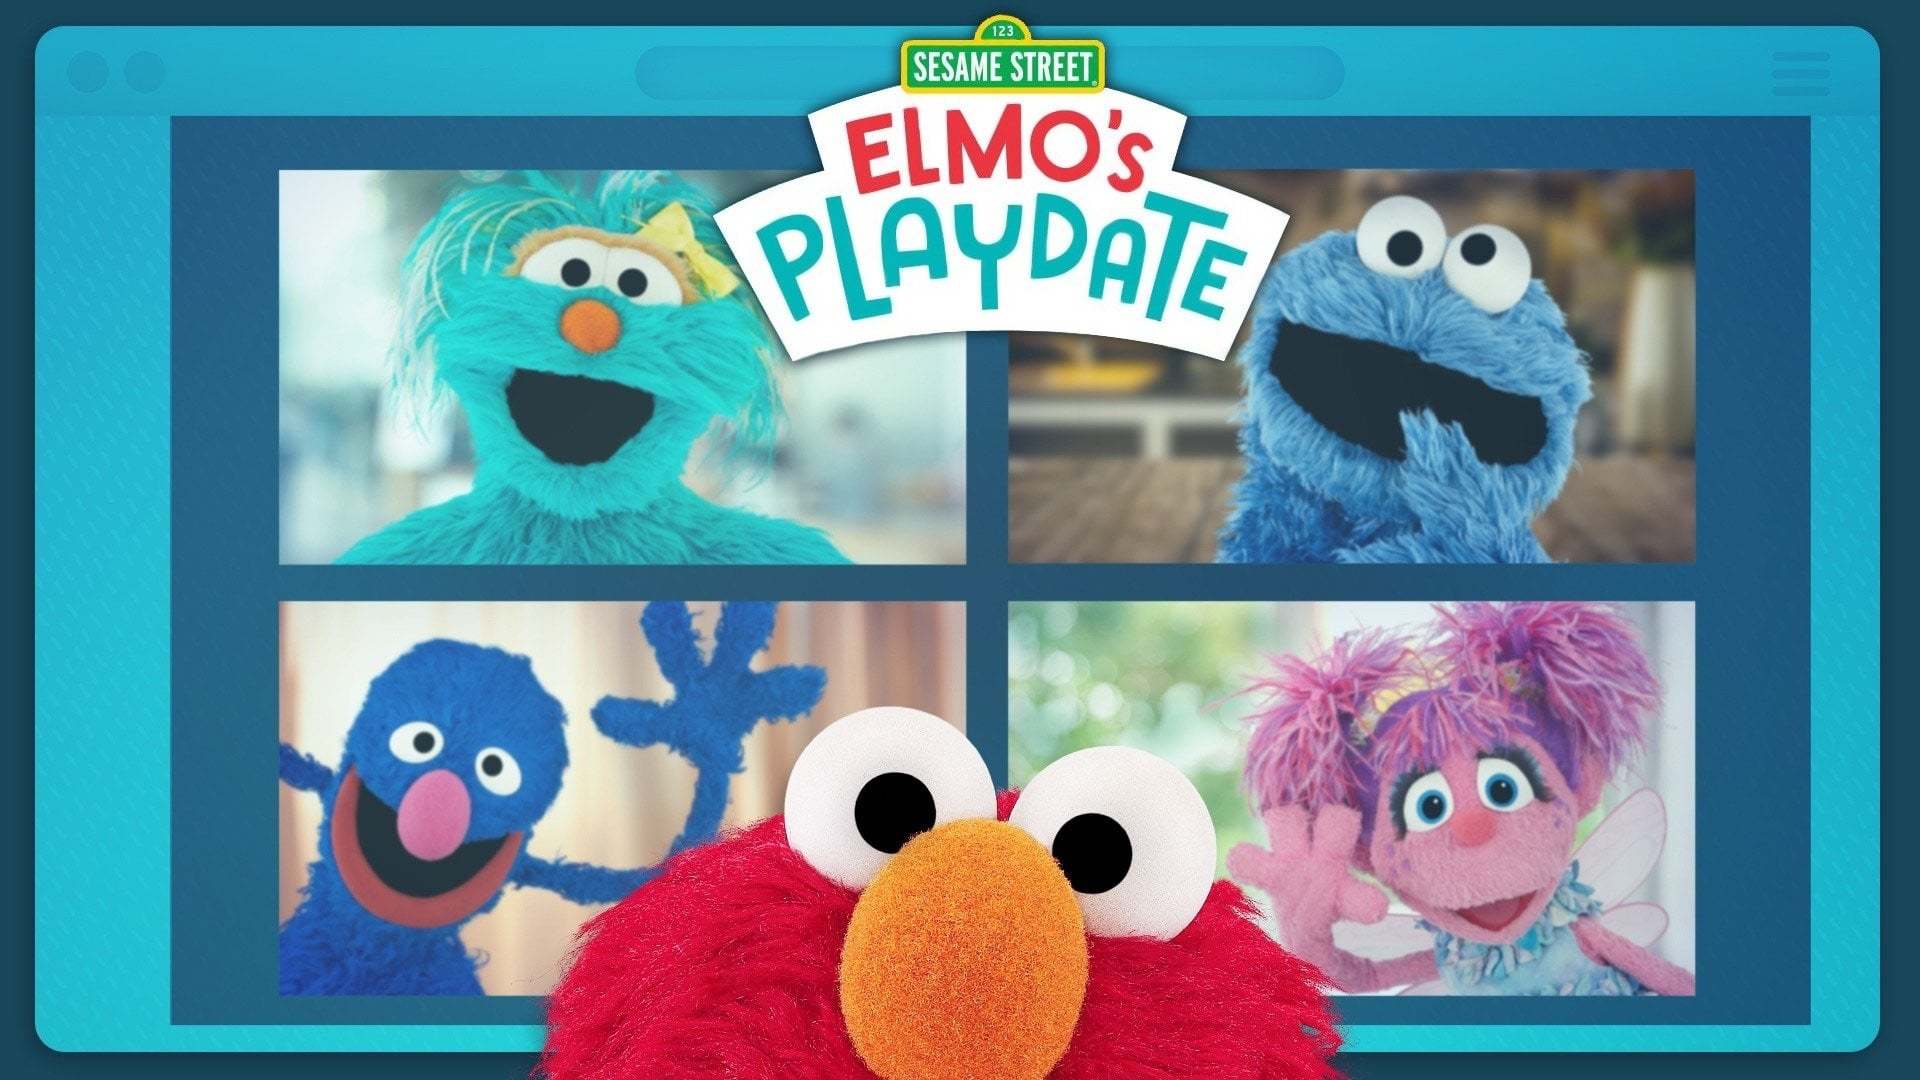 სეზამის ქუჩა: ელმოს თამაშის დრო / Sesame Street: Elmo's Playdate